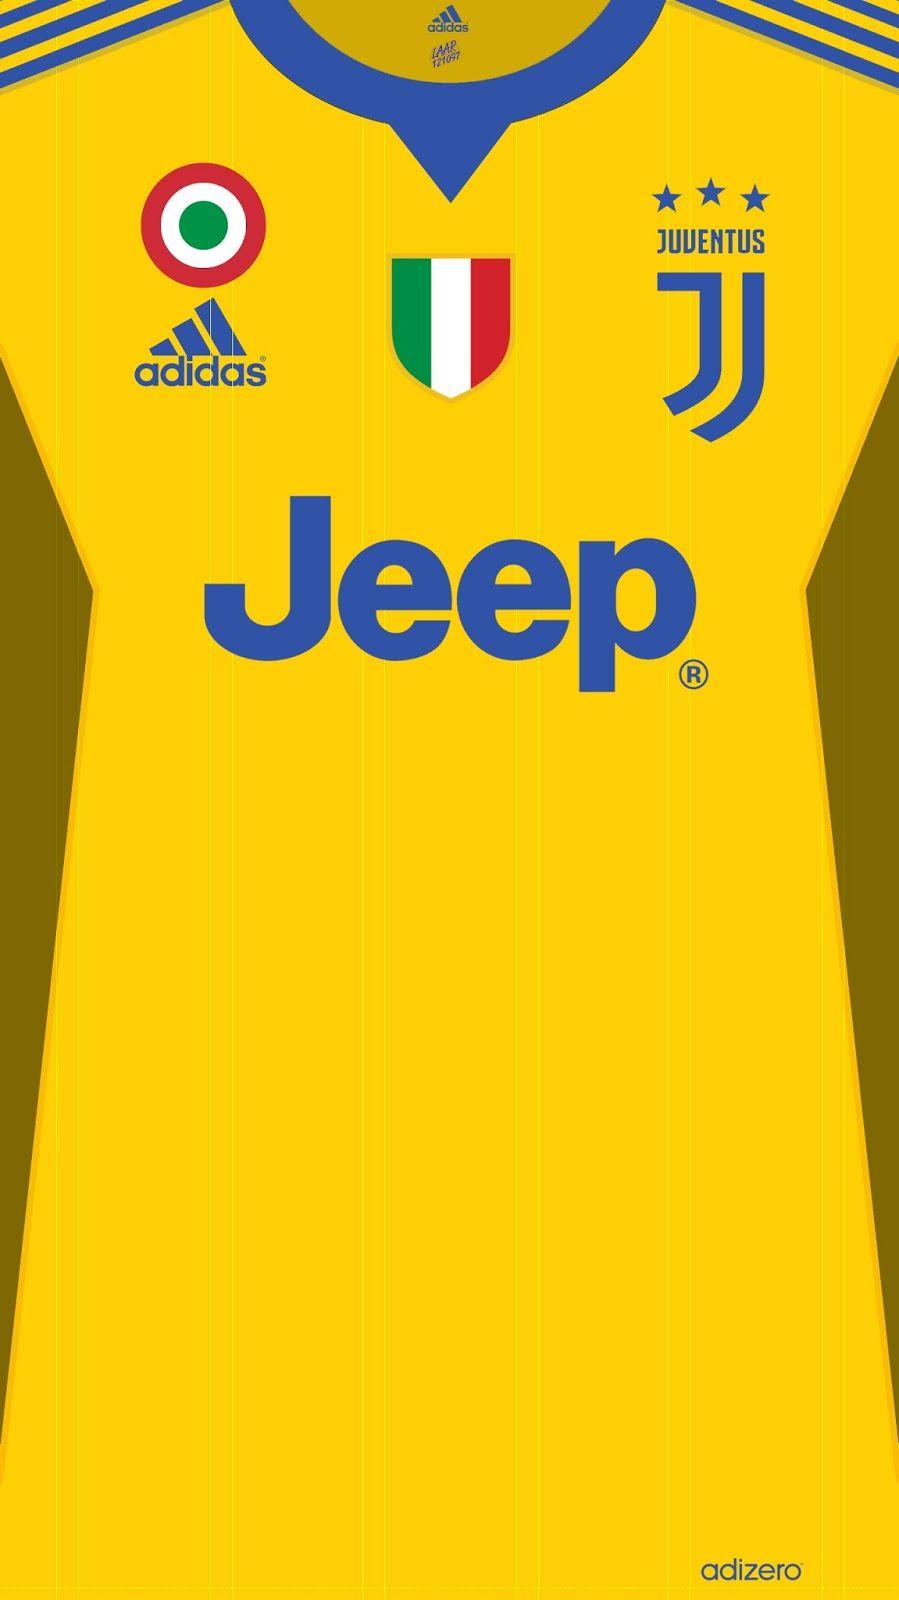 Wallpaper Jersey Juventus Football Club Serie A 2017 2018